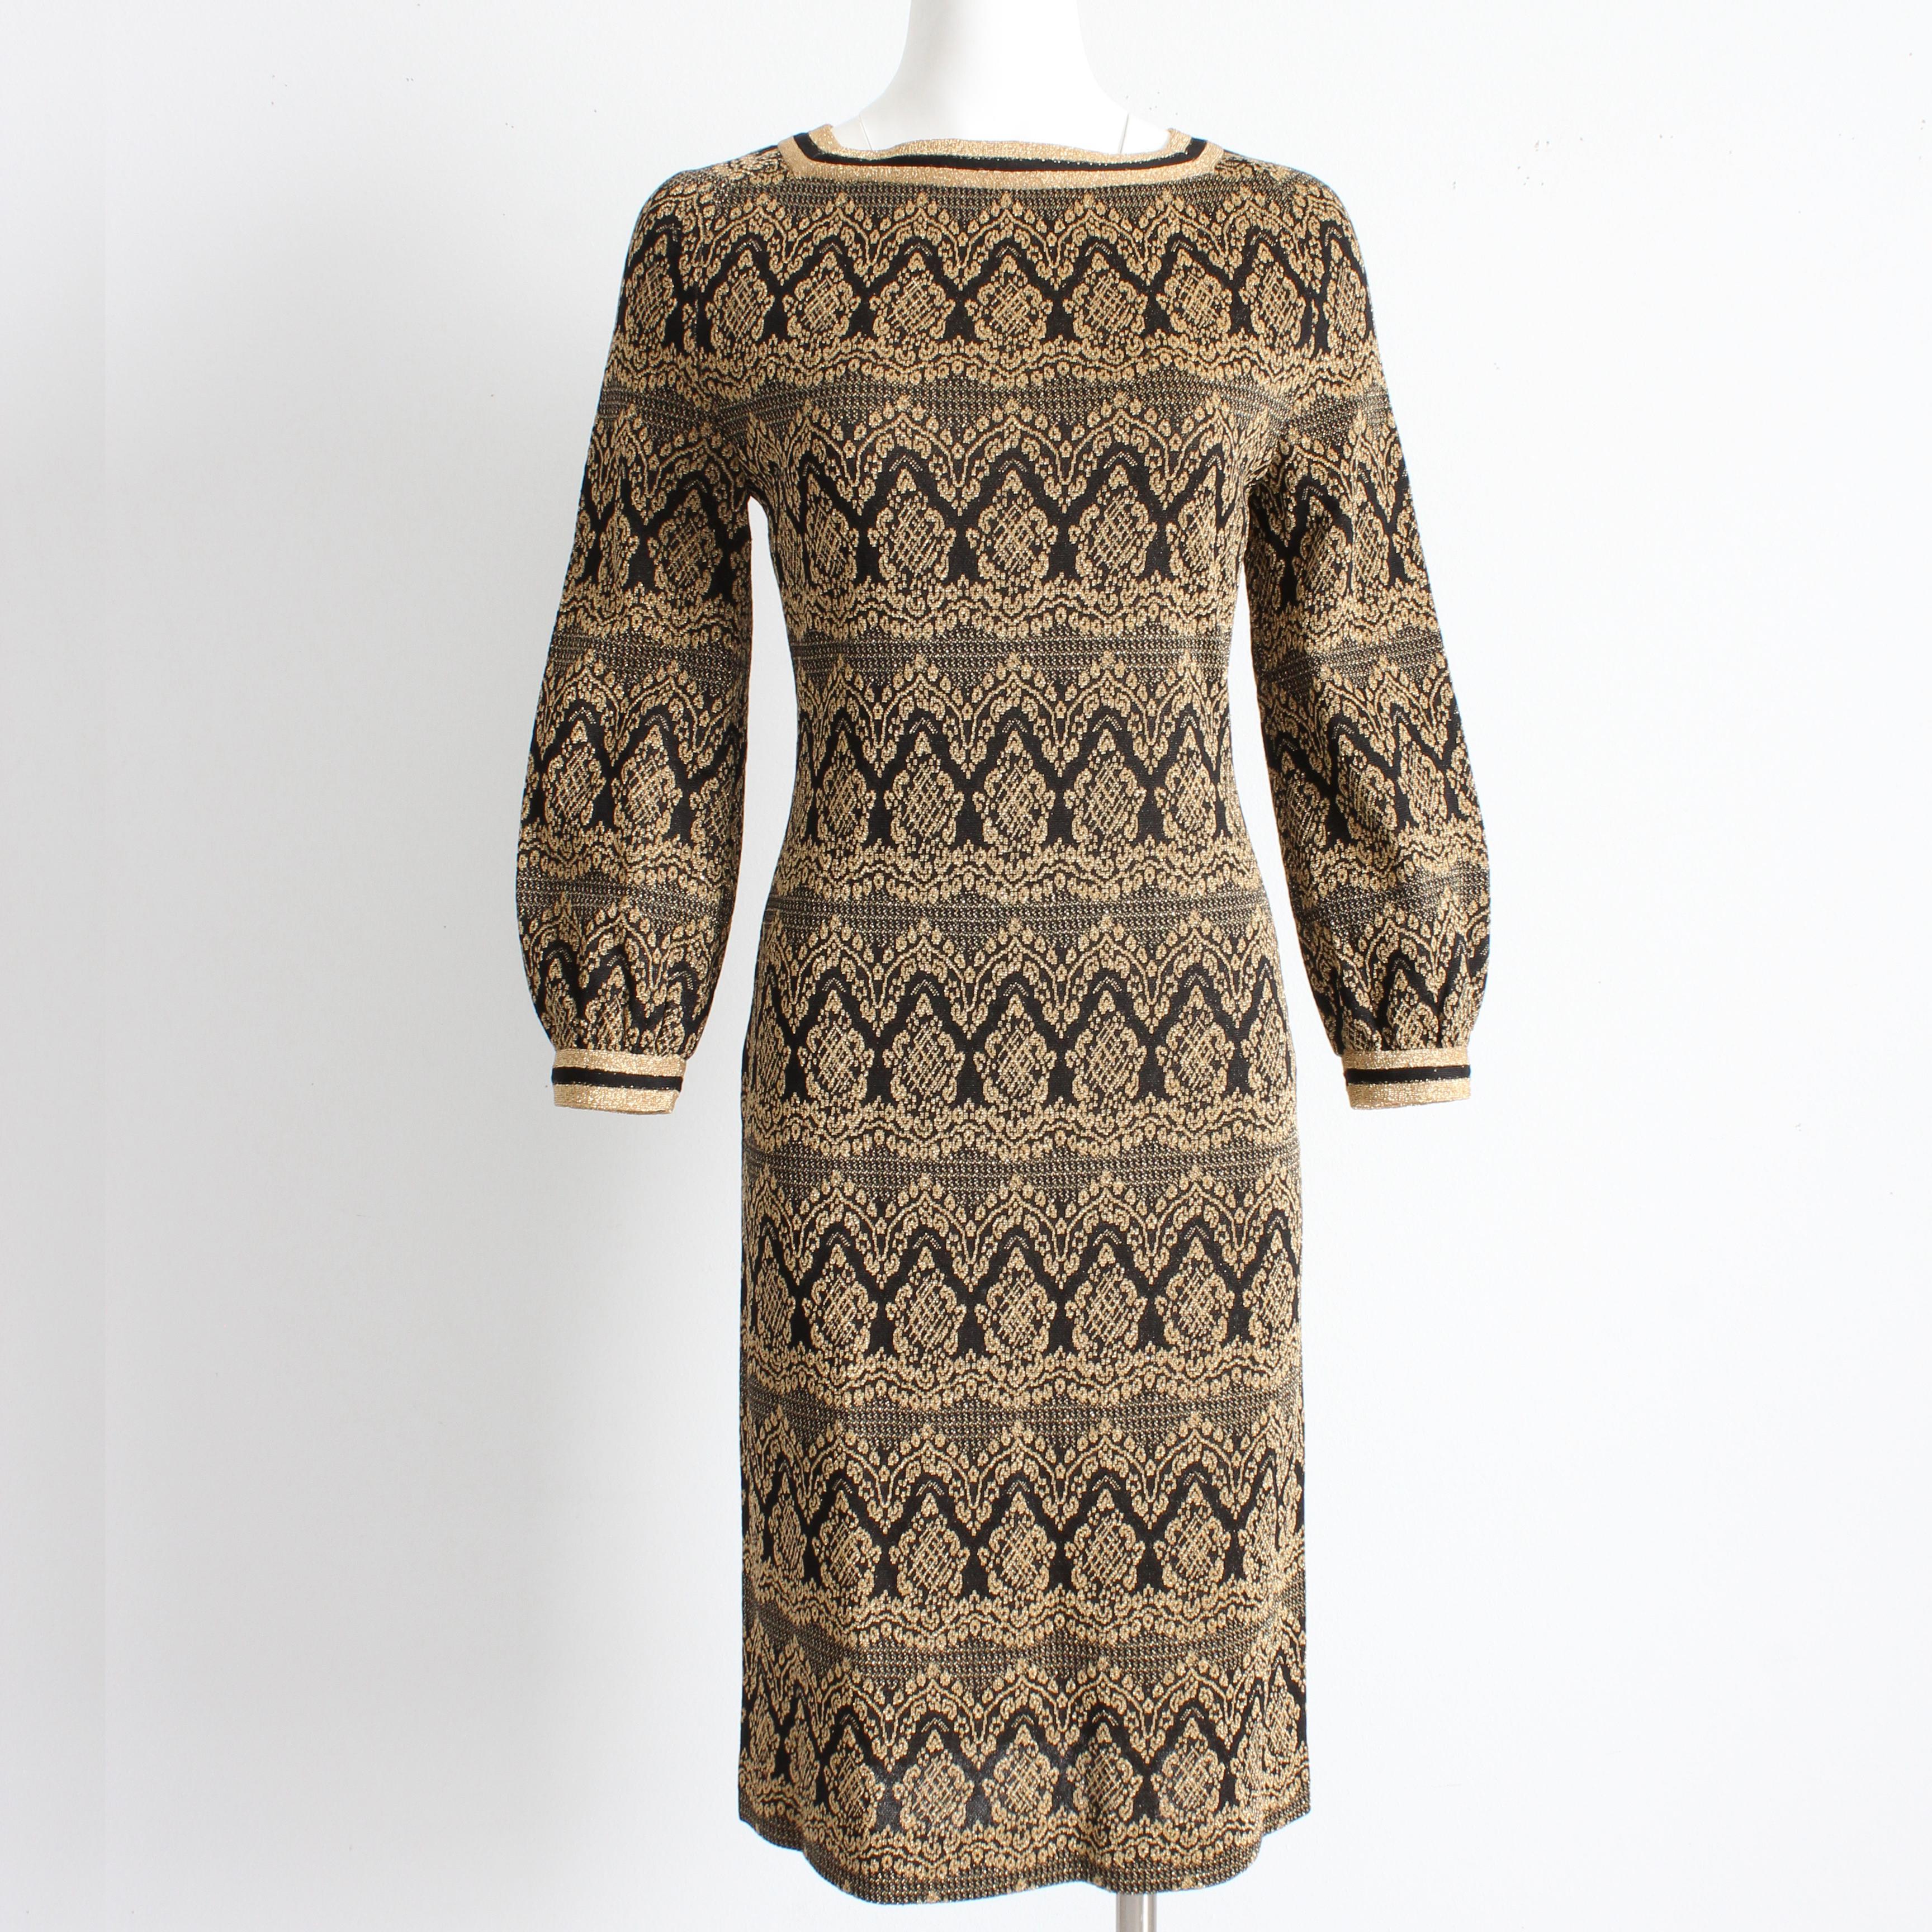 Robe vintage en tricot de Bobette Imports France, probablement fabriquée à la fin des années 60. Confectionné en maille Lurex métallisée noire et dorée, il présente un motif moderne d'inspiration marocaine, une fermeture à glissière arrière, une